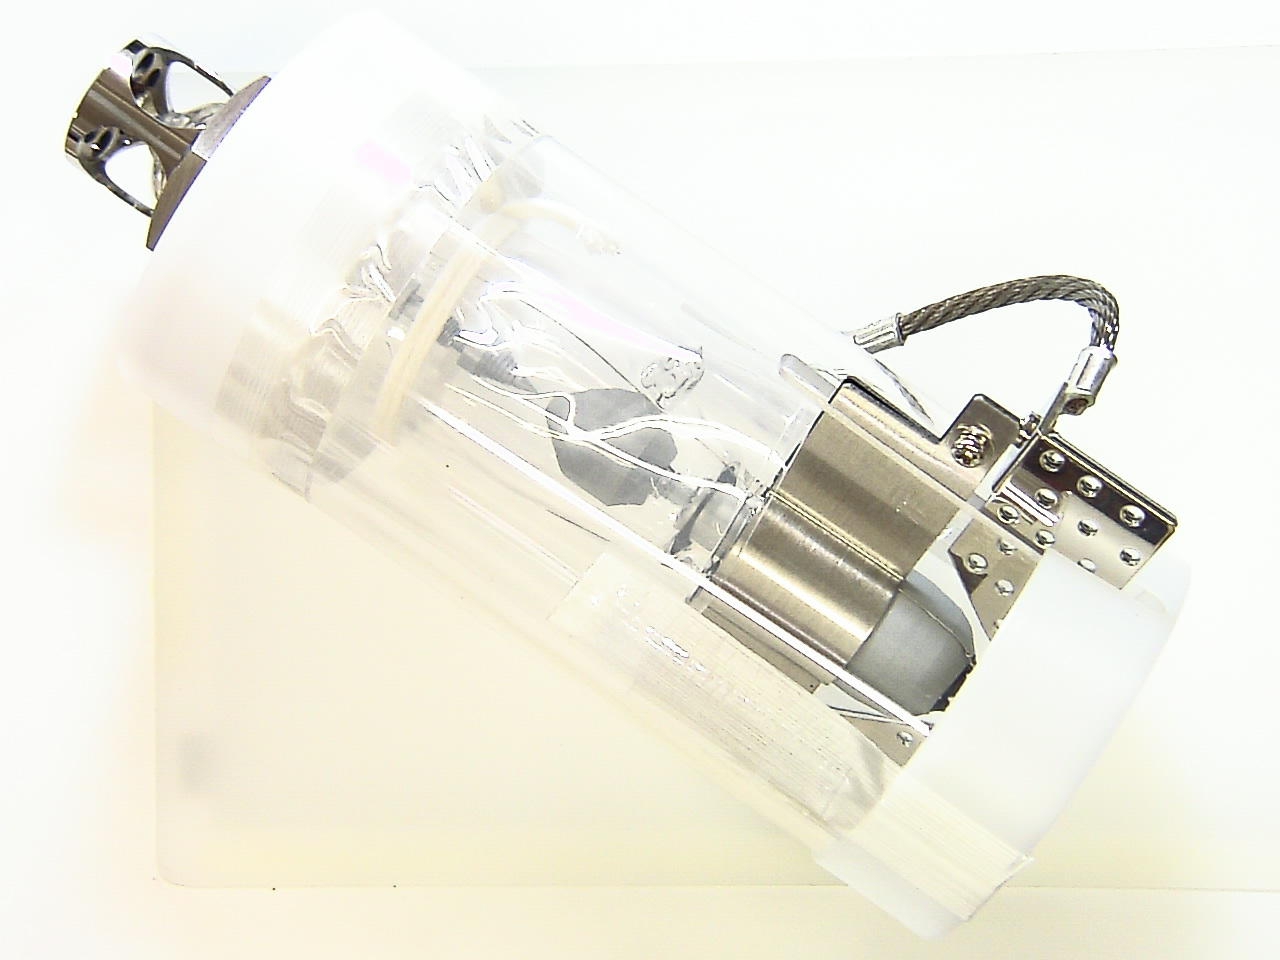 SONYSRX-R110CE (bulb only)